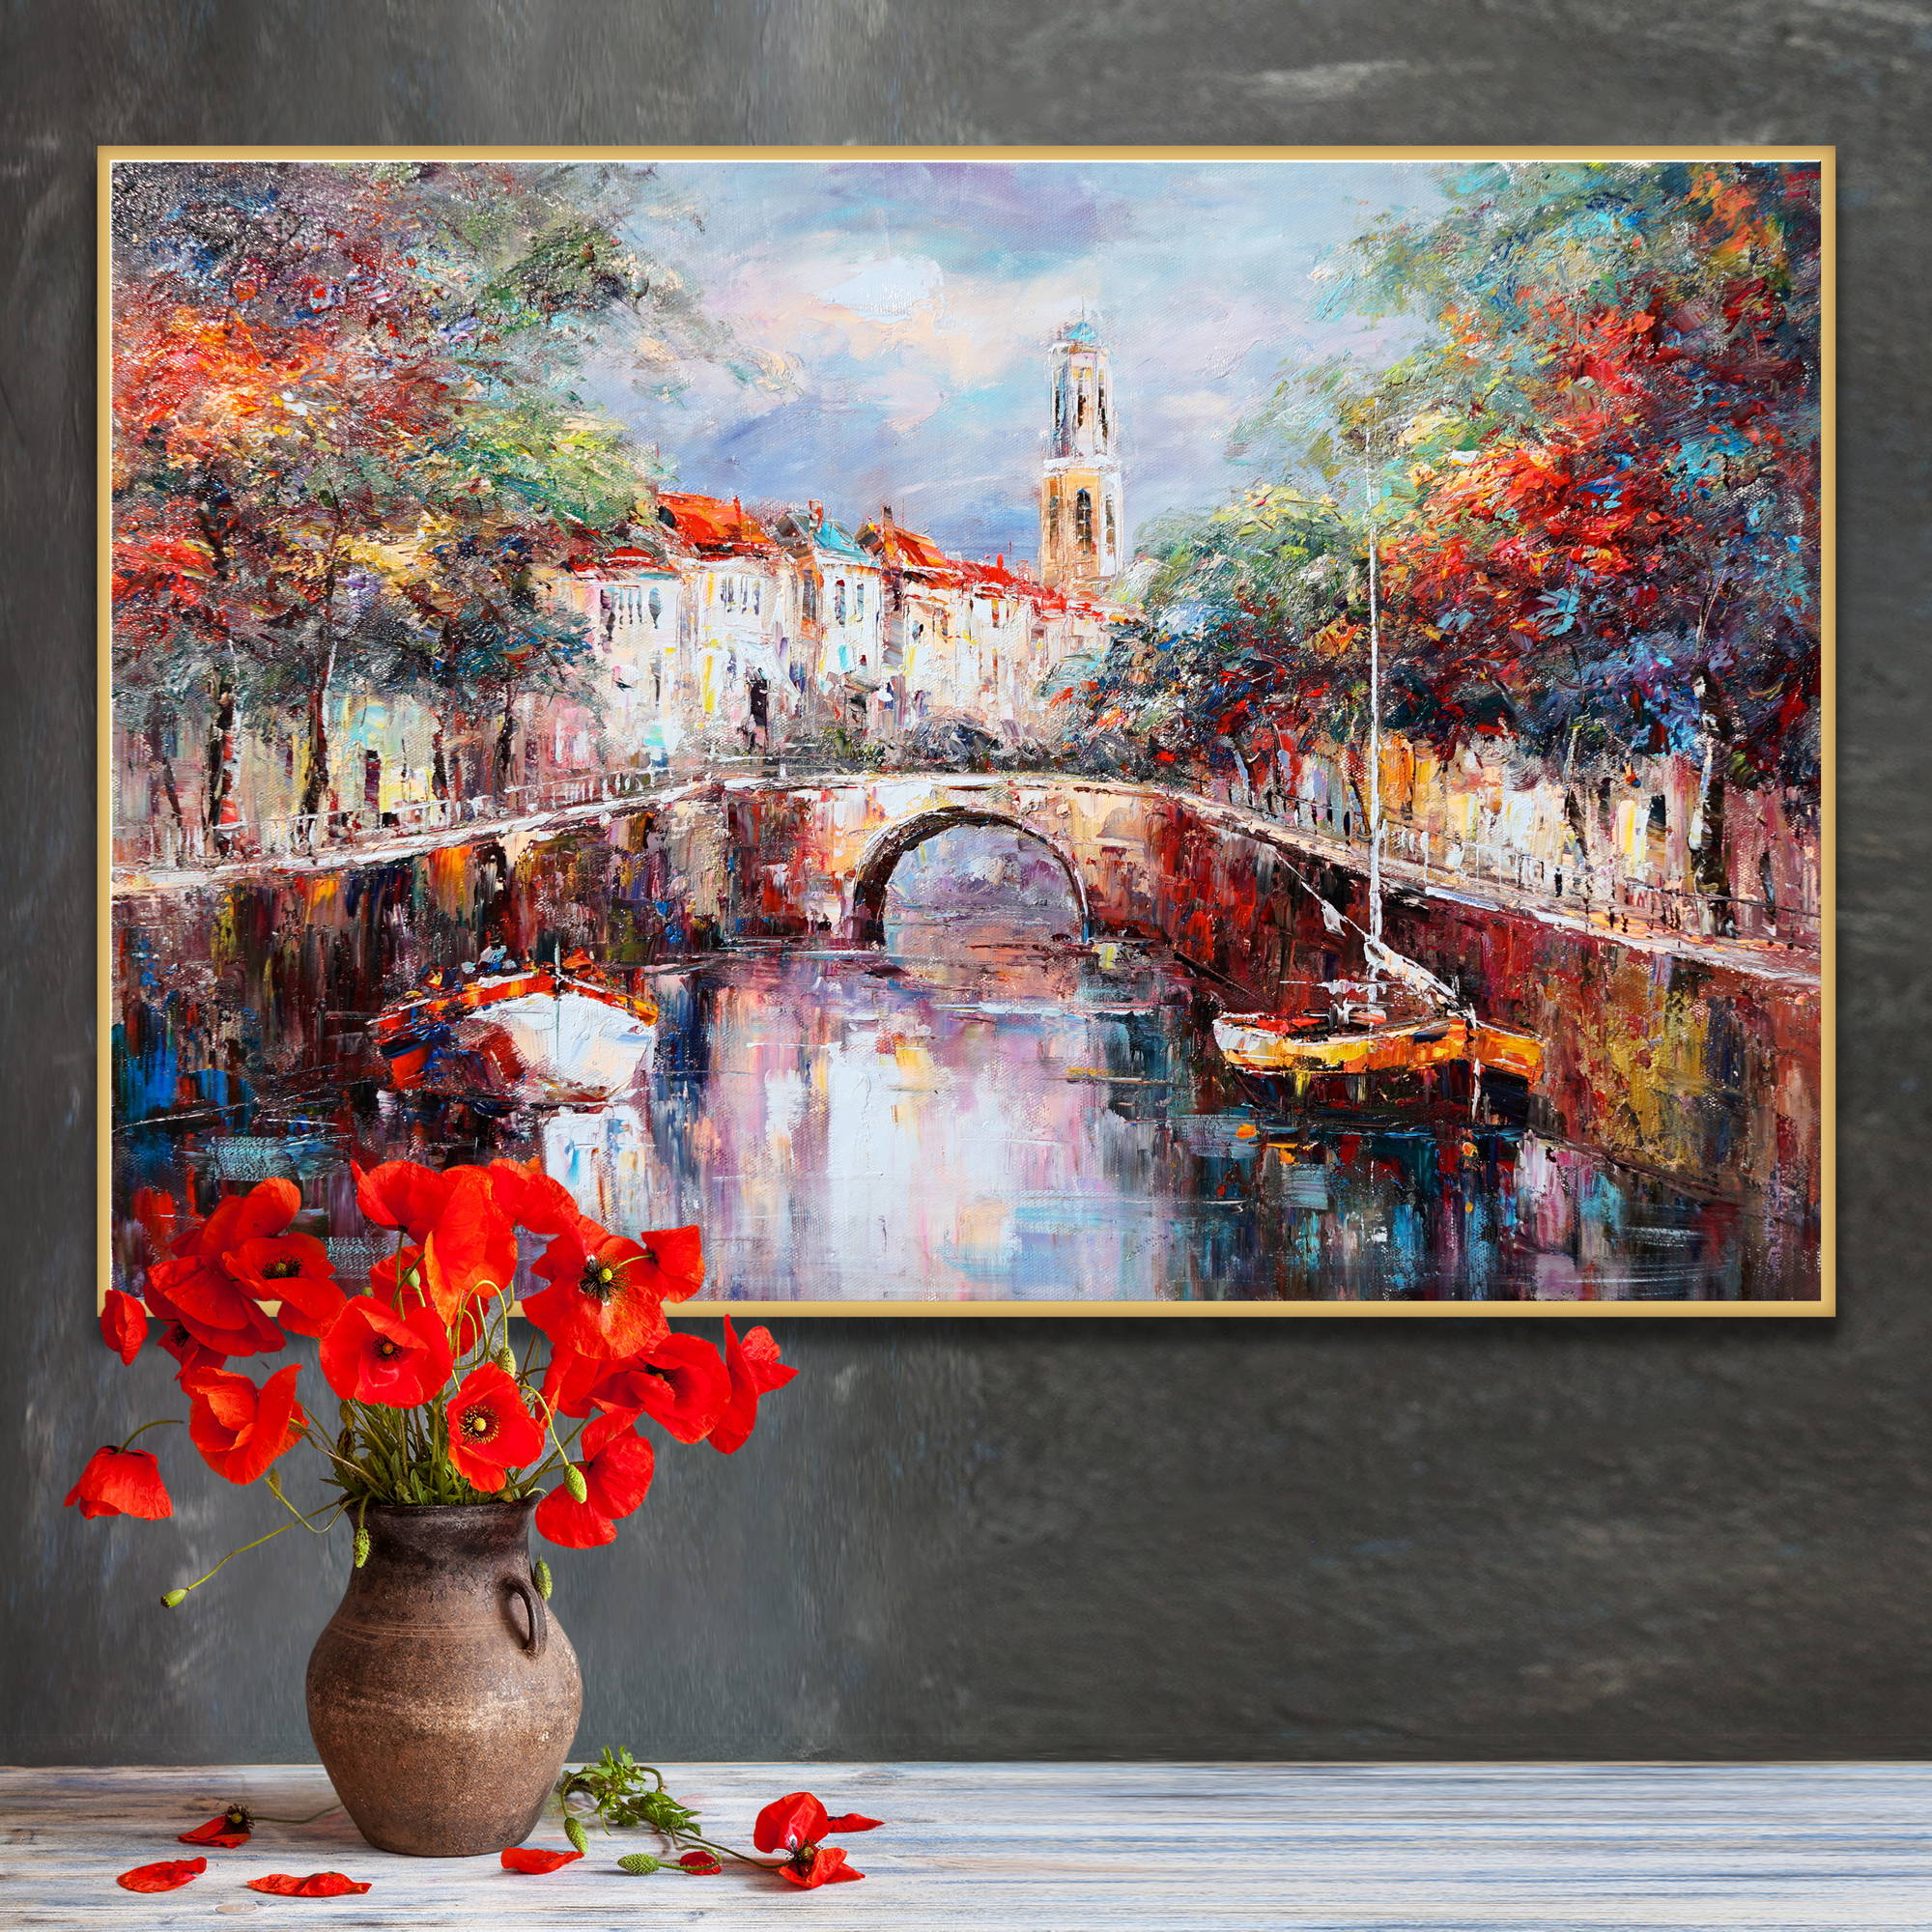 Dipinto di un tipico canale olandese con barche, alberi colorati e architettura storica